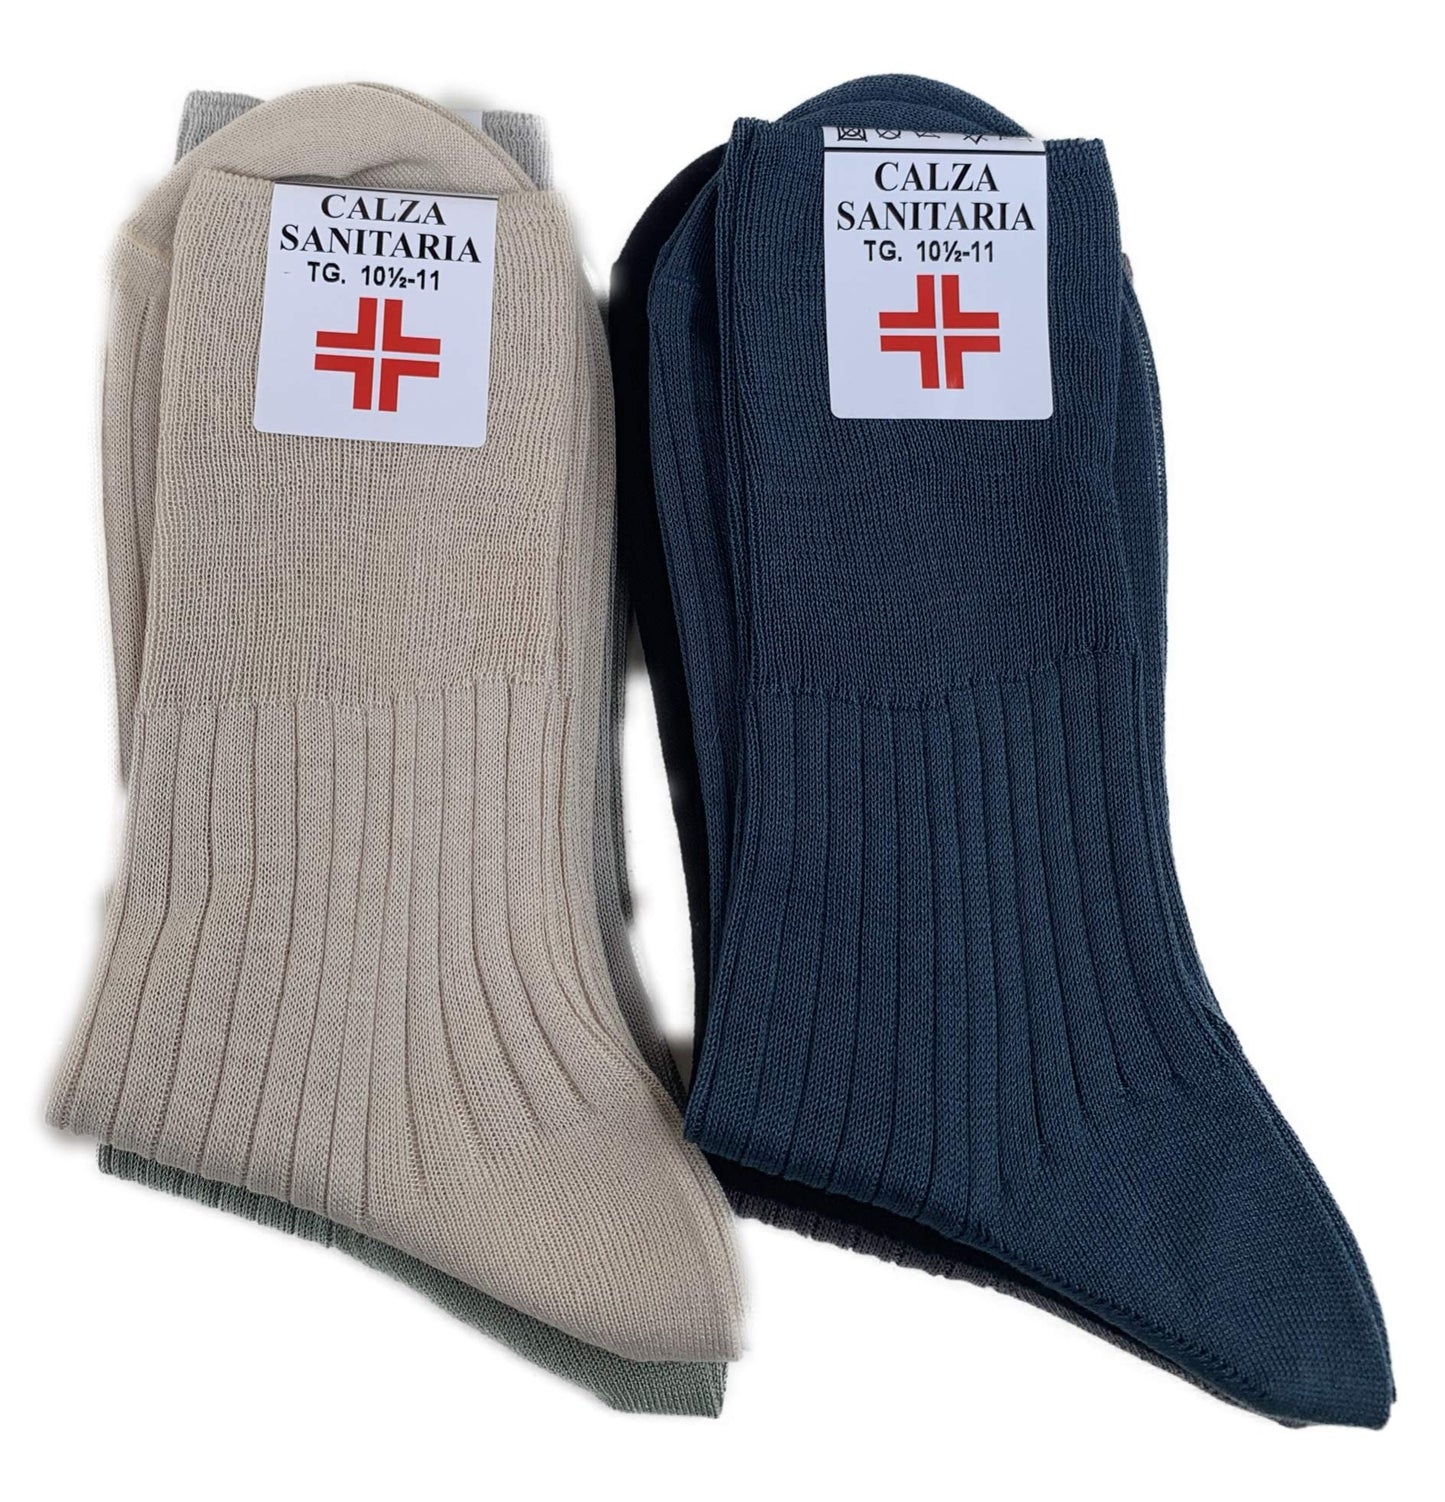 Lucchetti Socks Milano 6 PAIA calze da uomo SANITARIE filo di scozia 100% cotone rimagliate Made in Italy (11½12 43-46, Assortiti Chiari)